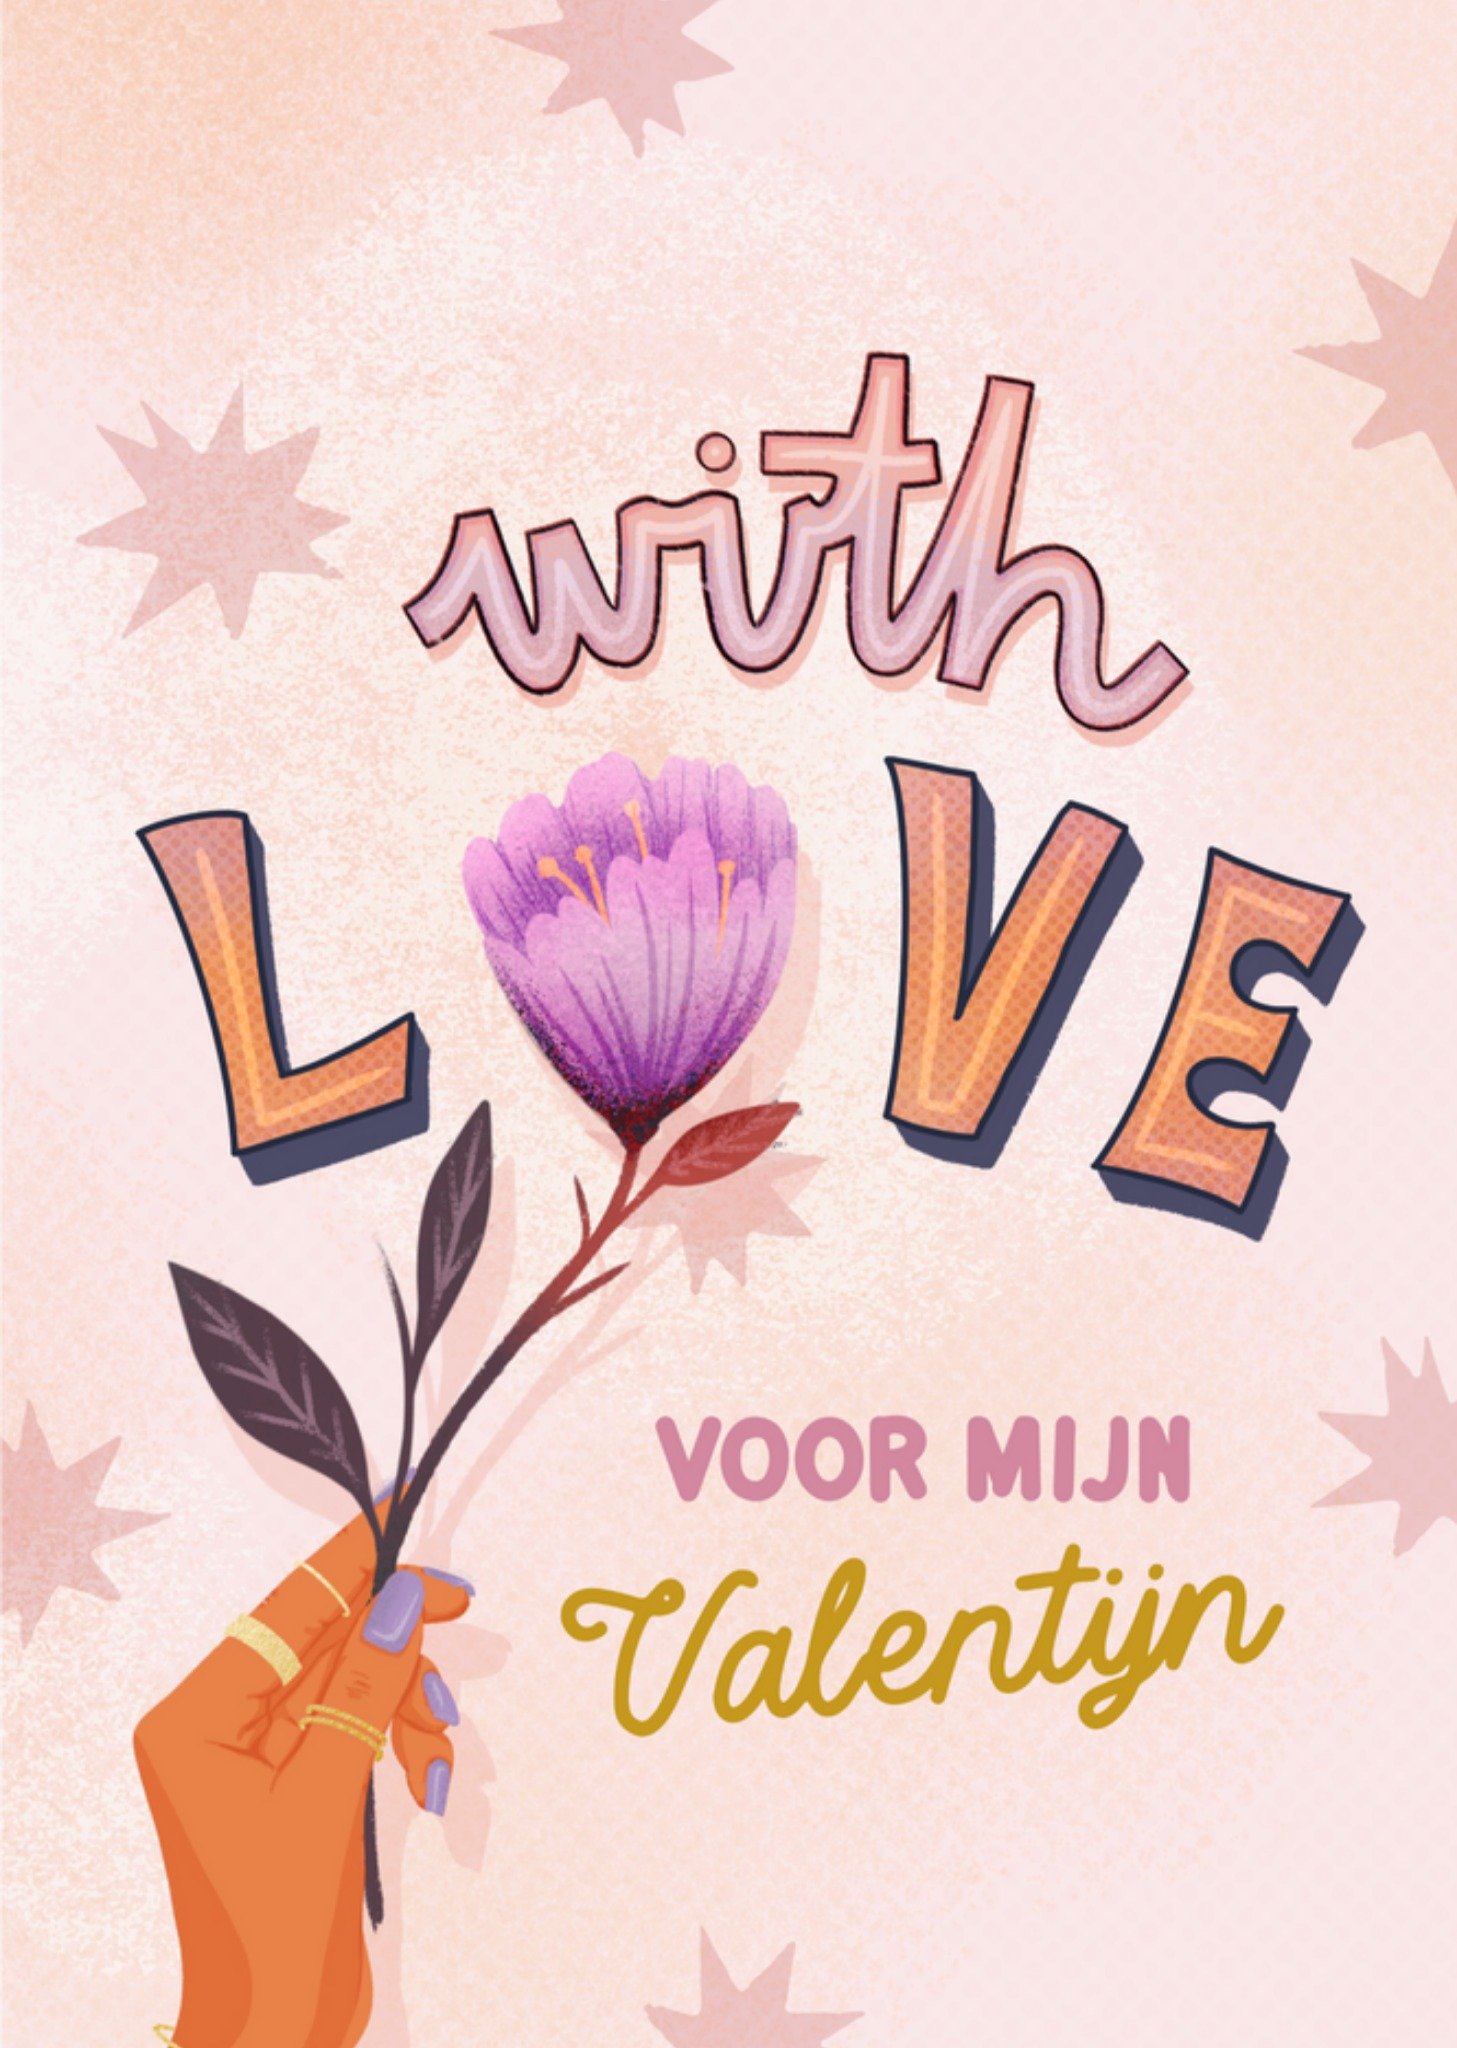 Valentijnskaart - With Love